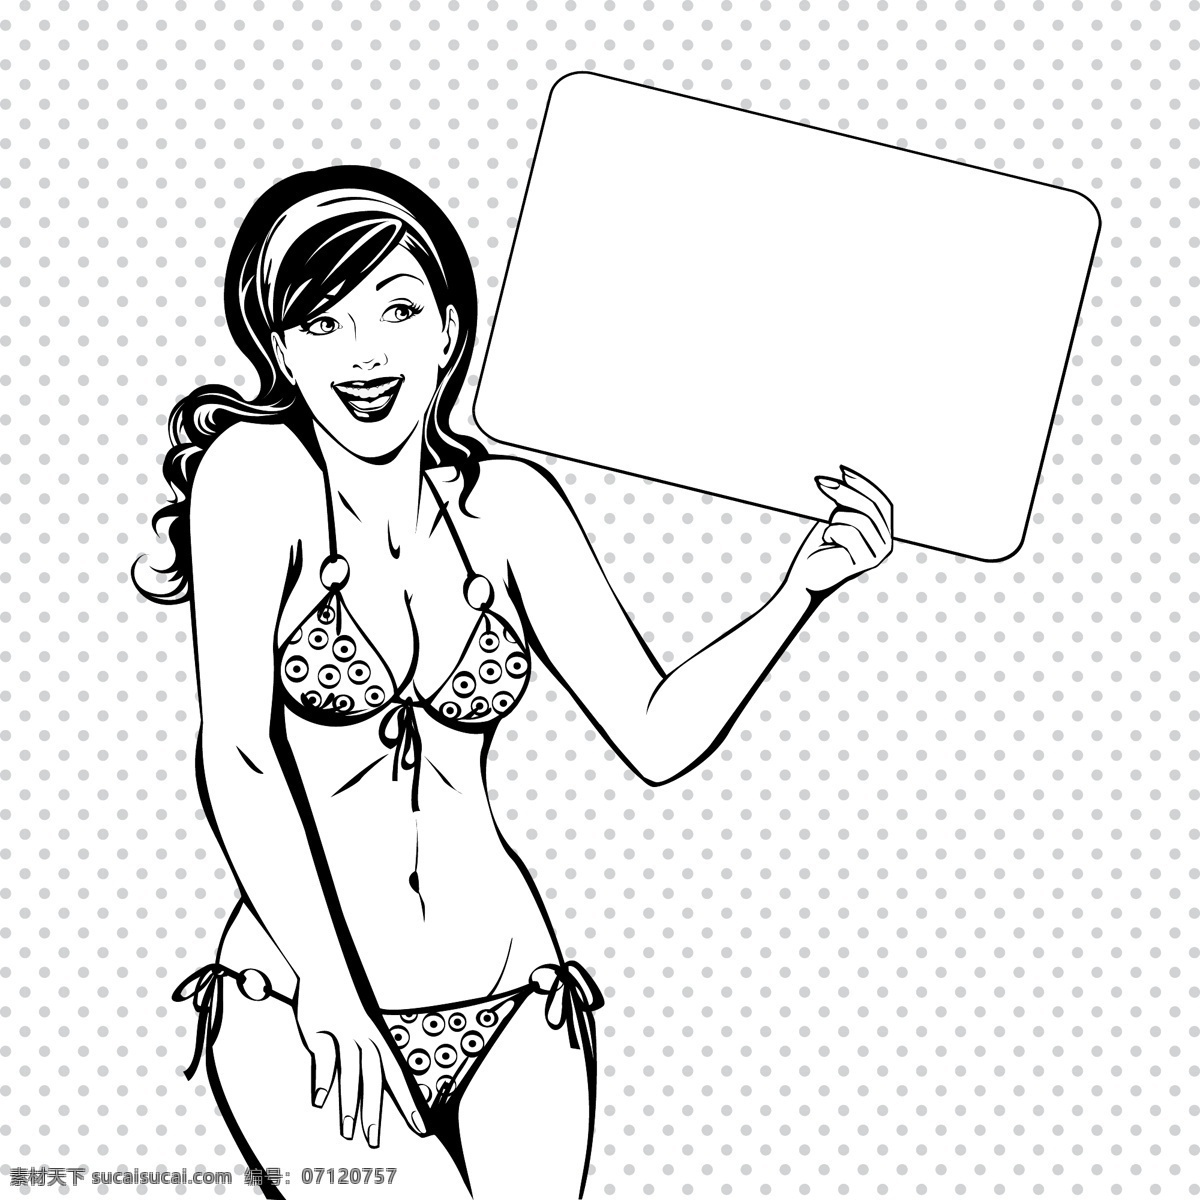 黑白 动漫 欧美 女性 对话 矢量 泳装 漫画 对话框 手绘 线条